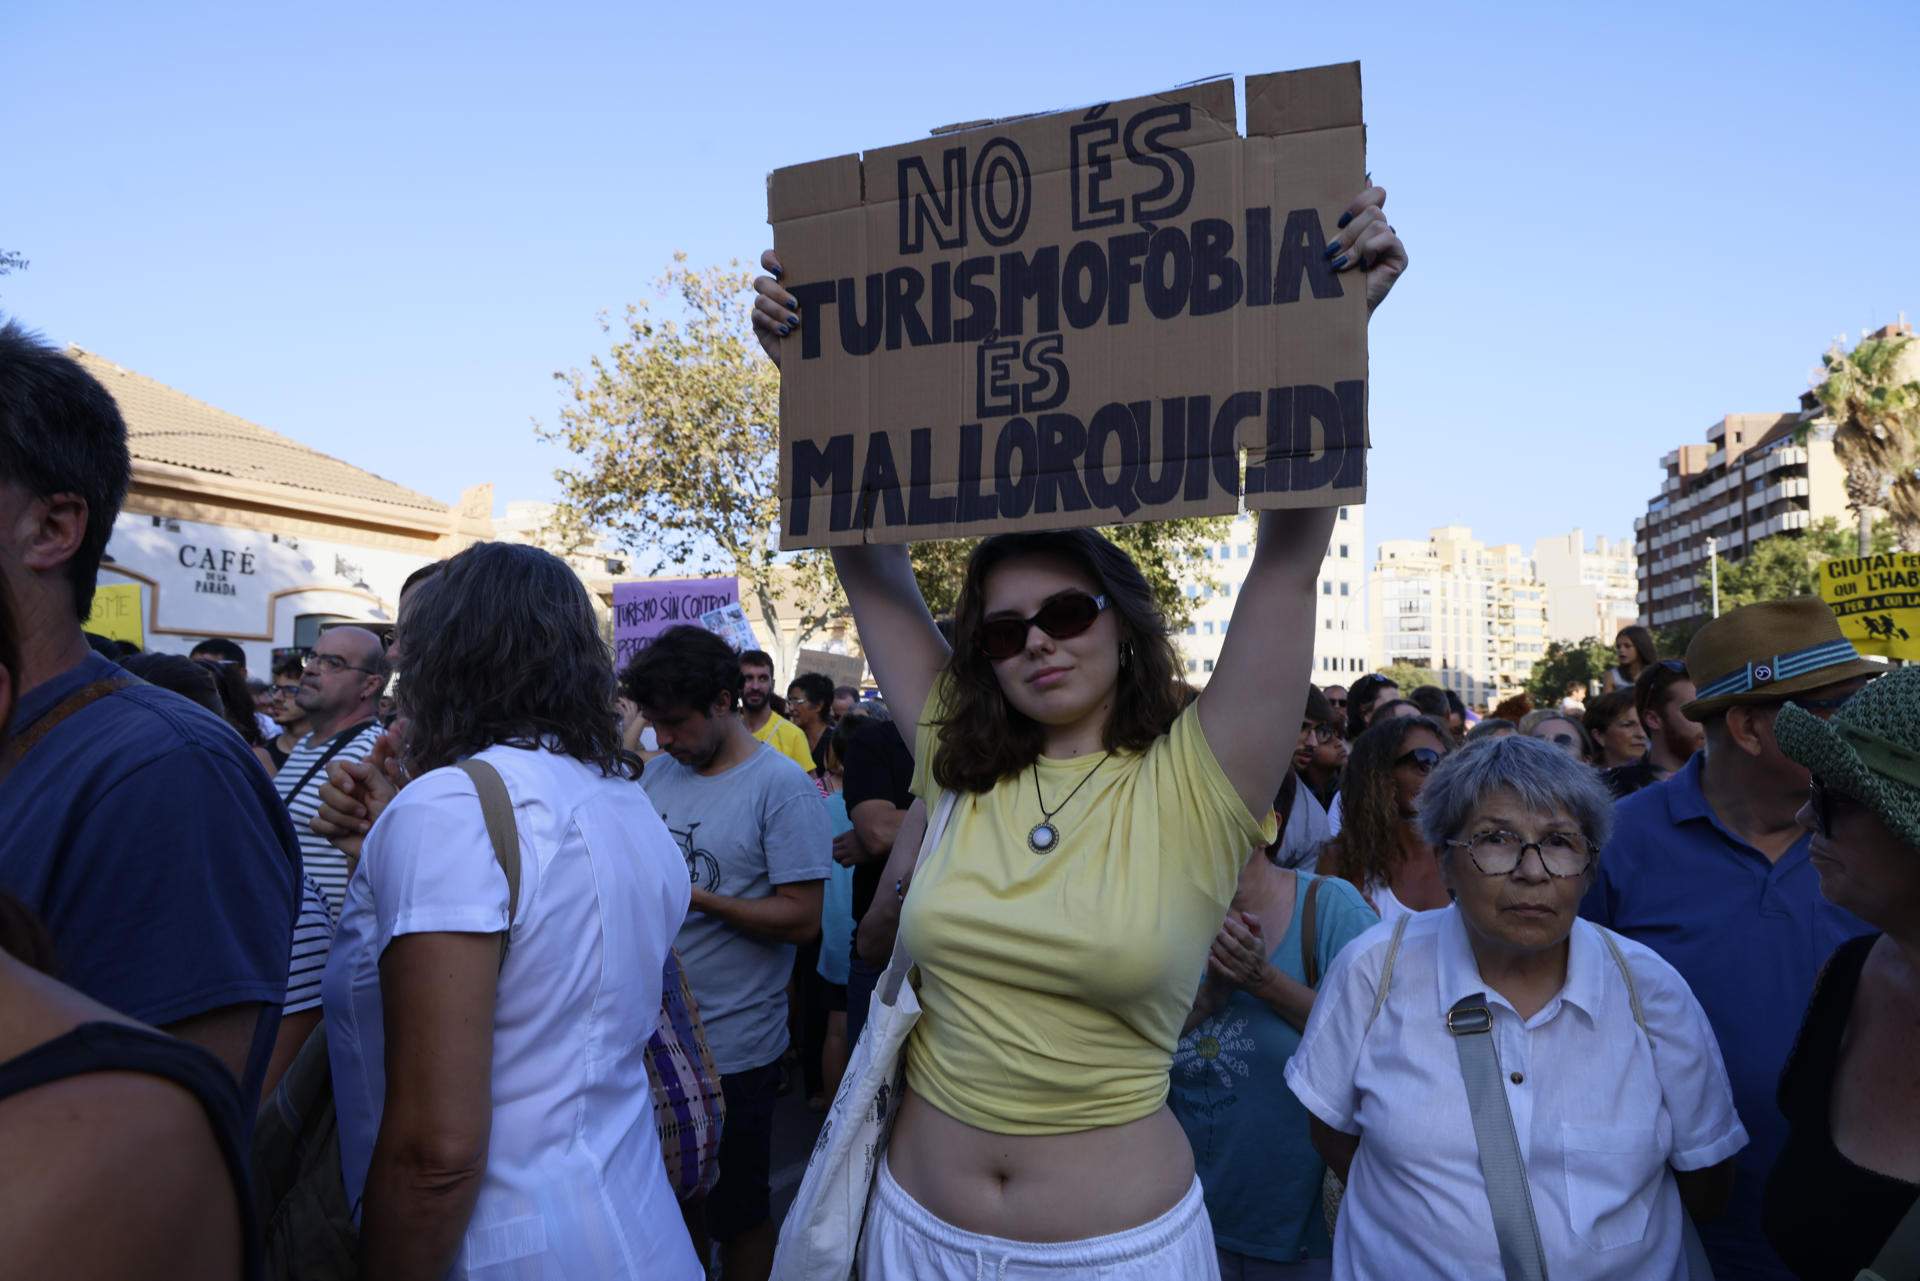 Milers de persones protesten a Palma contra el turisme massiu i criden l'atenció internacional